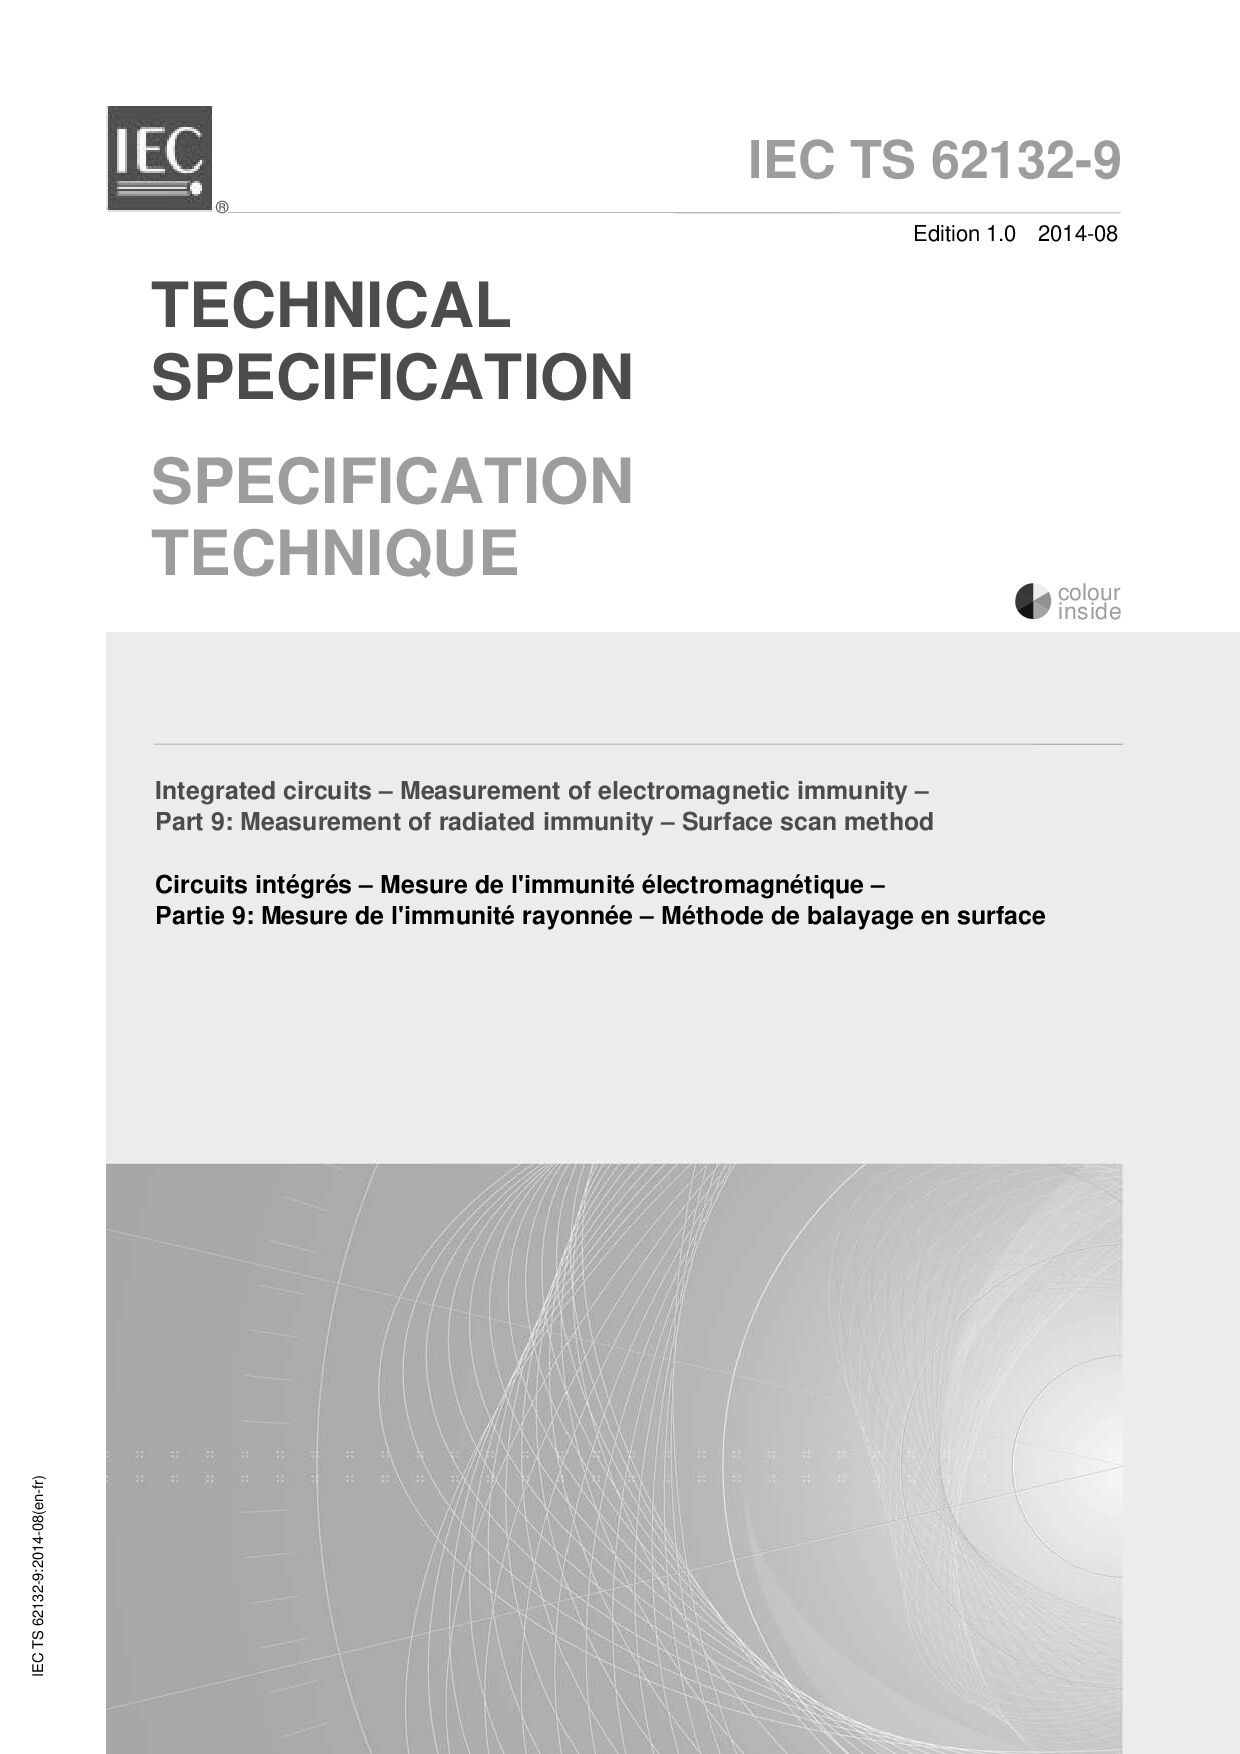 IEC TS 62132-9:2014